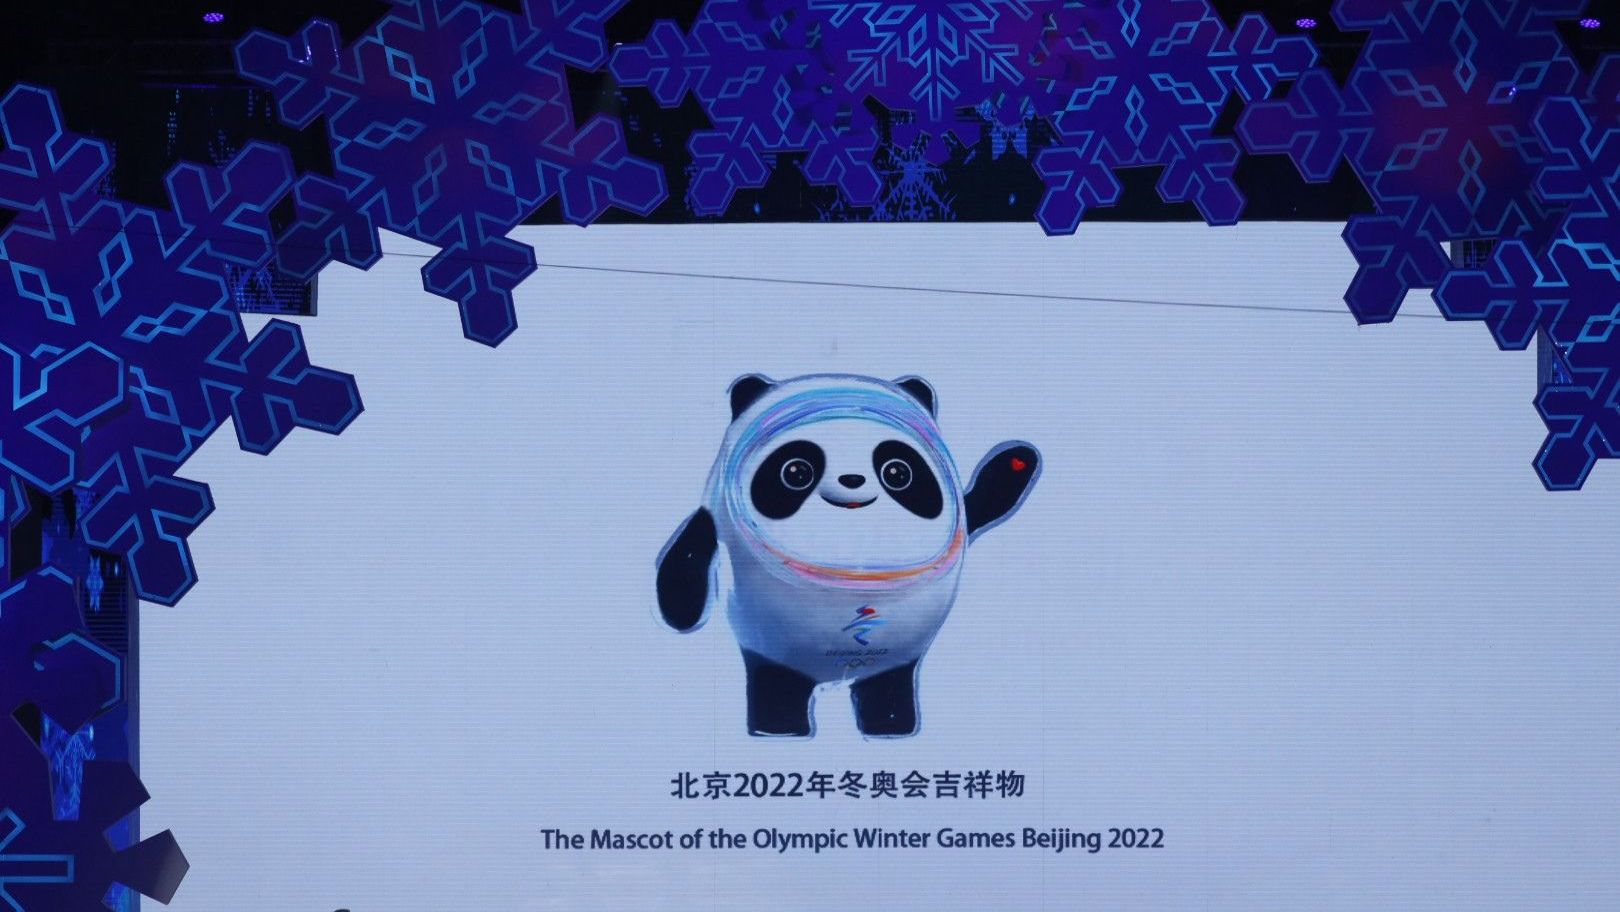 2022年北京冬奥会冬残奥会,吉祥物"冰墩墩","雪容融"发布